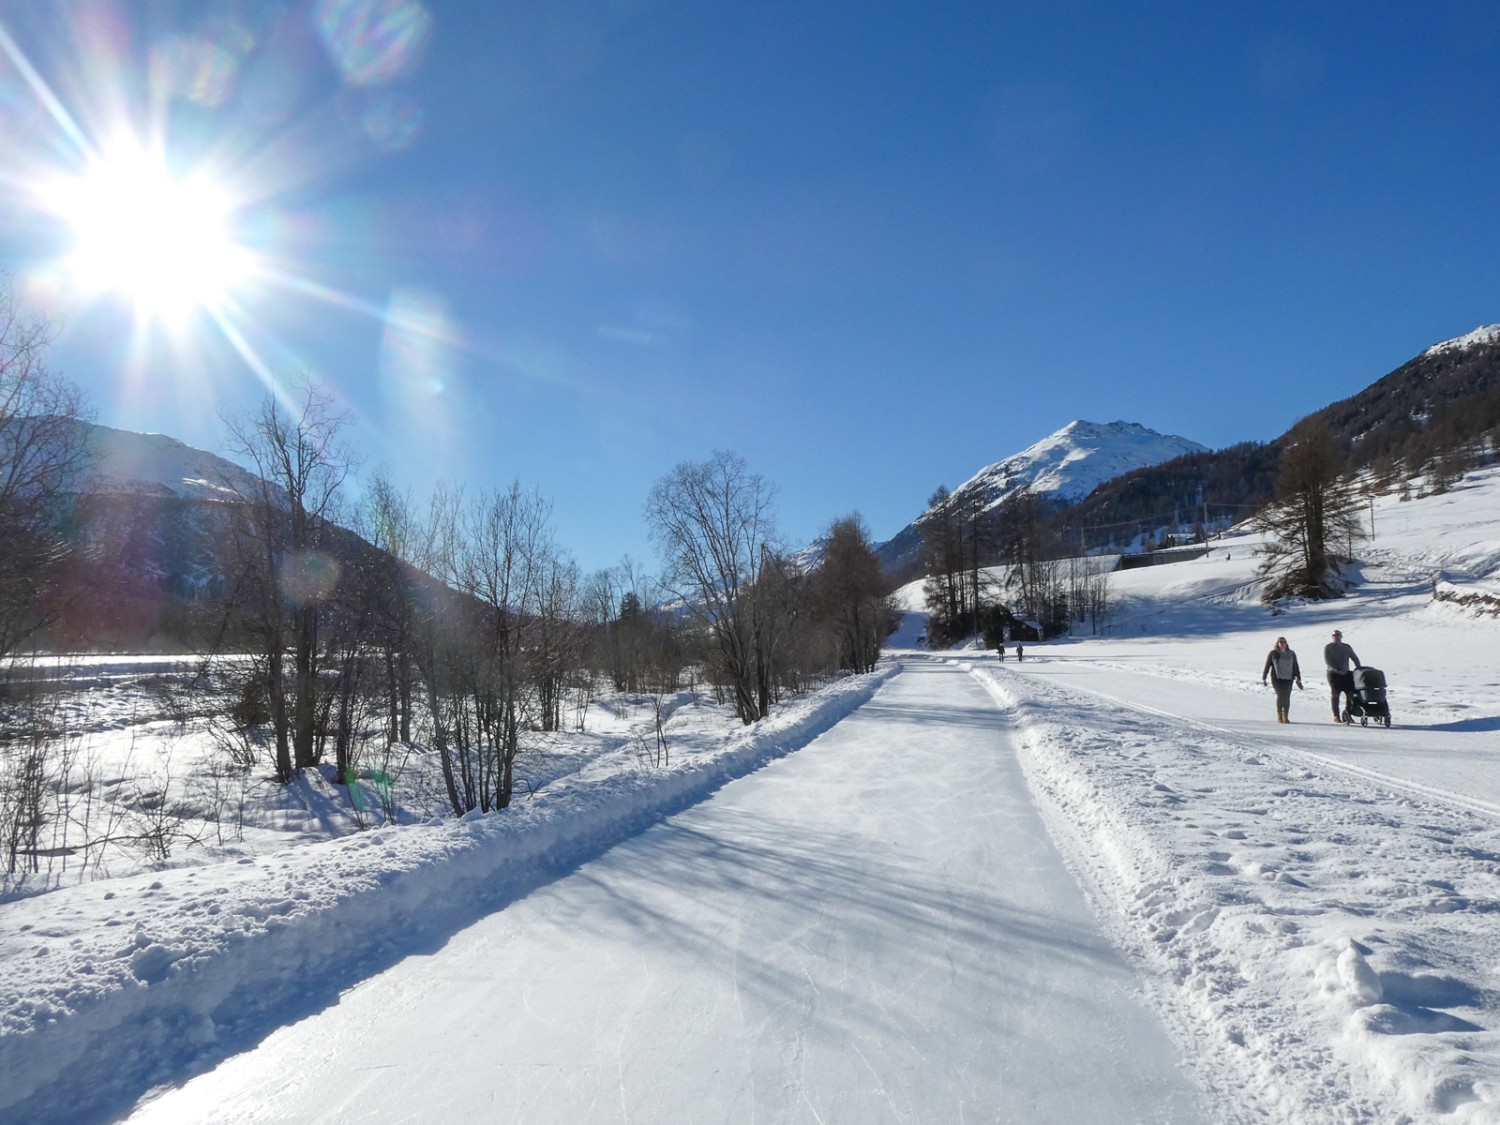 Sentier de glace pour les fans de glisse et chemin entretenu pour les adeptes de randonnée hivernale. Photo: Rémy Kappeler